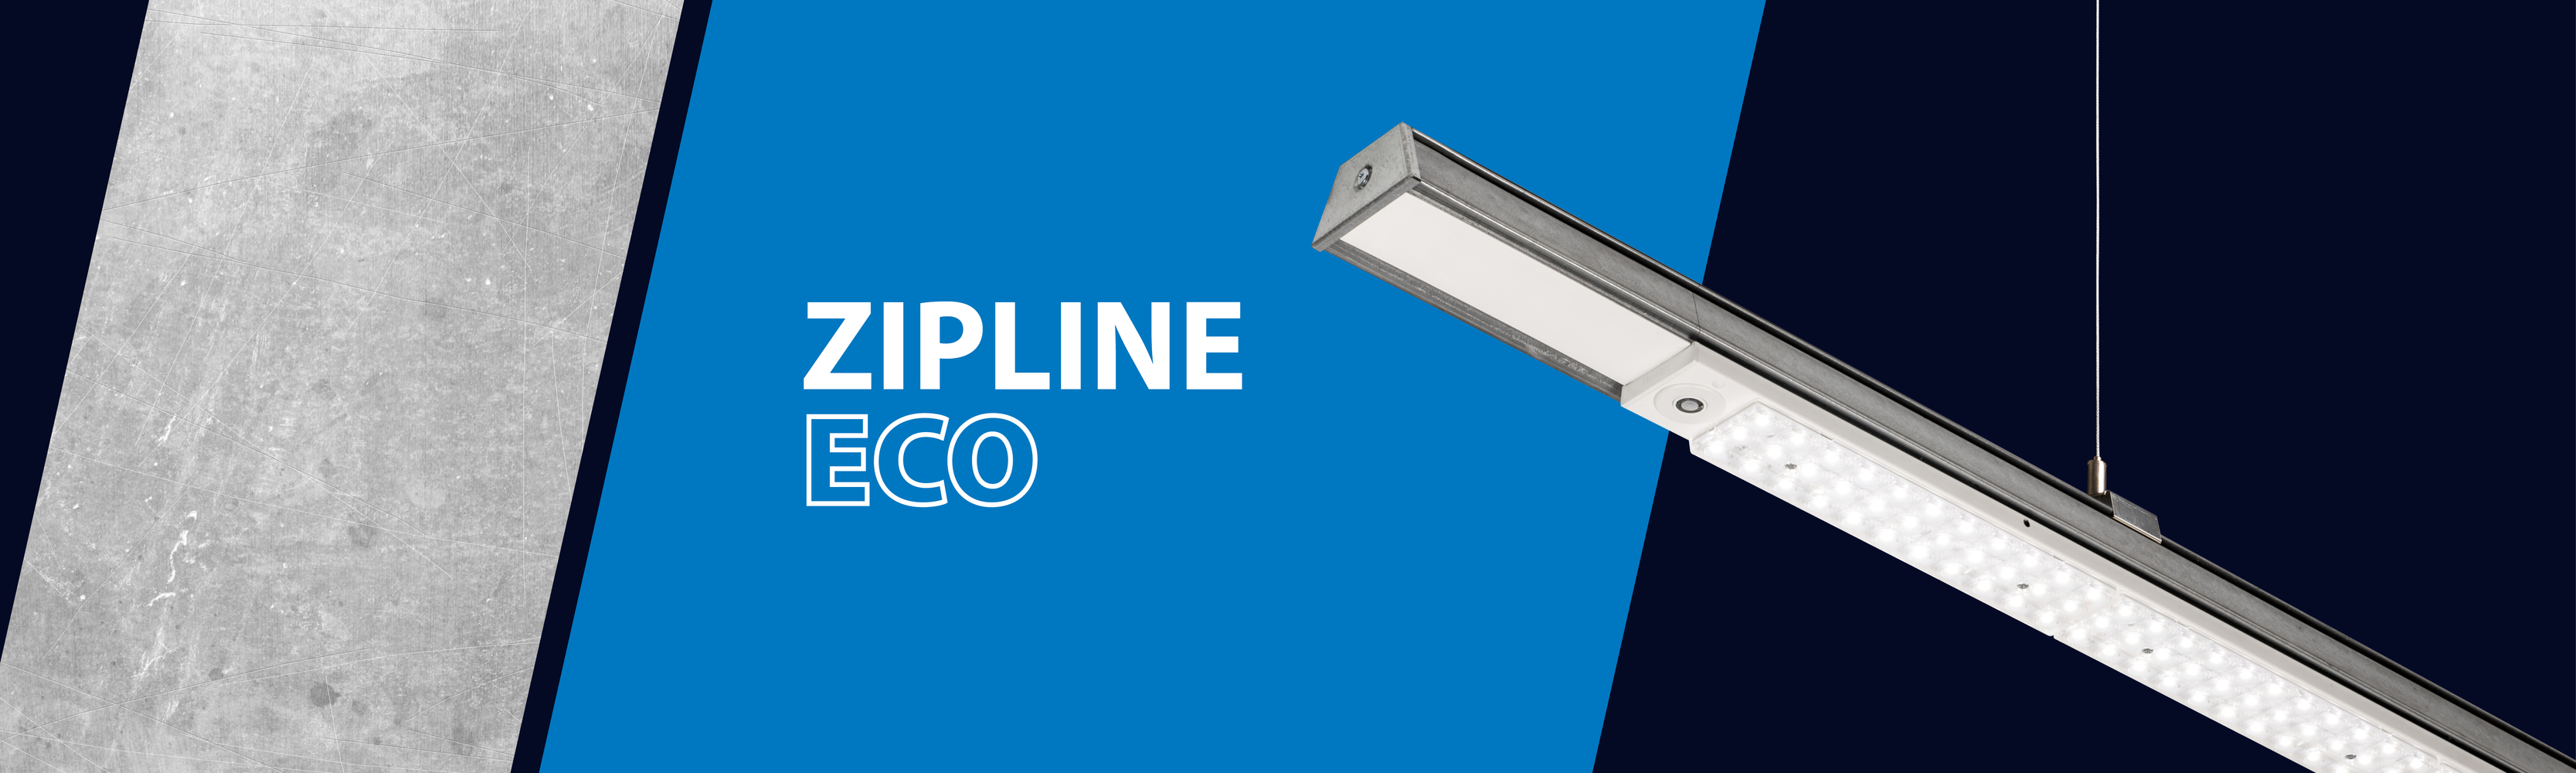 Zipline Eco – Flexibles Lichtbandsystem für industrielle Anwendungen